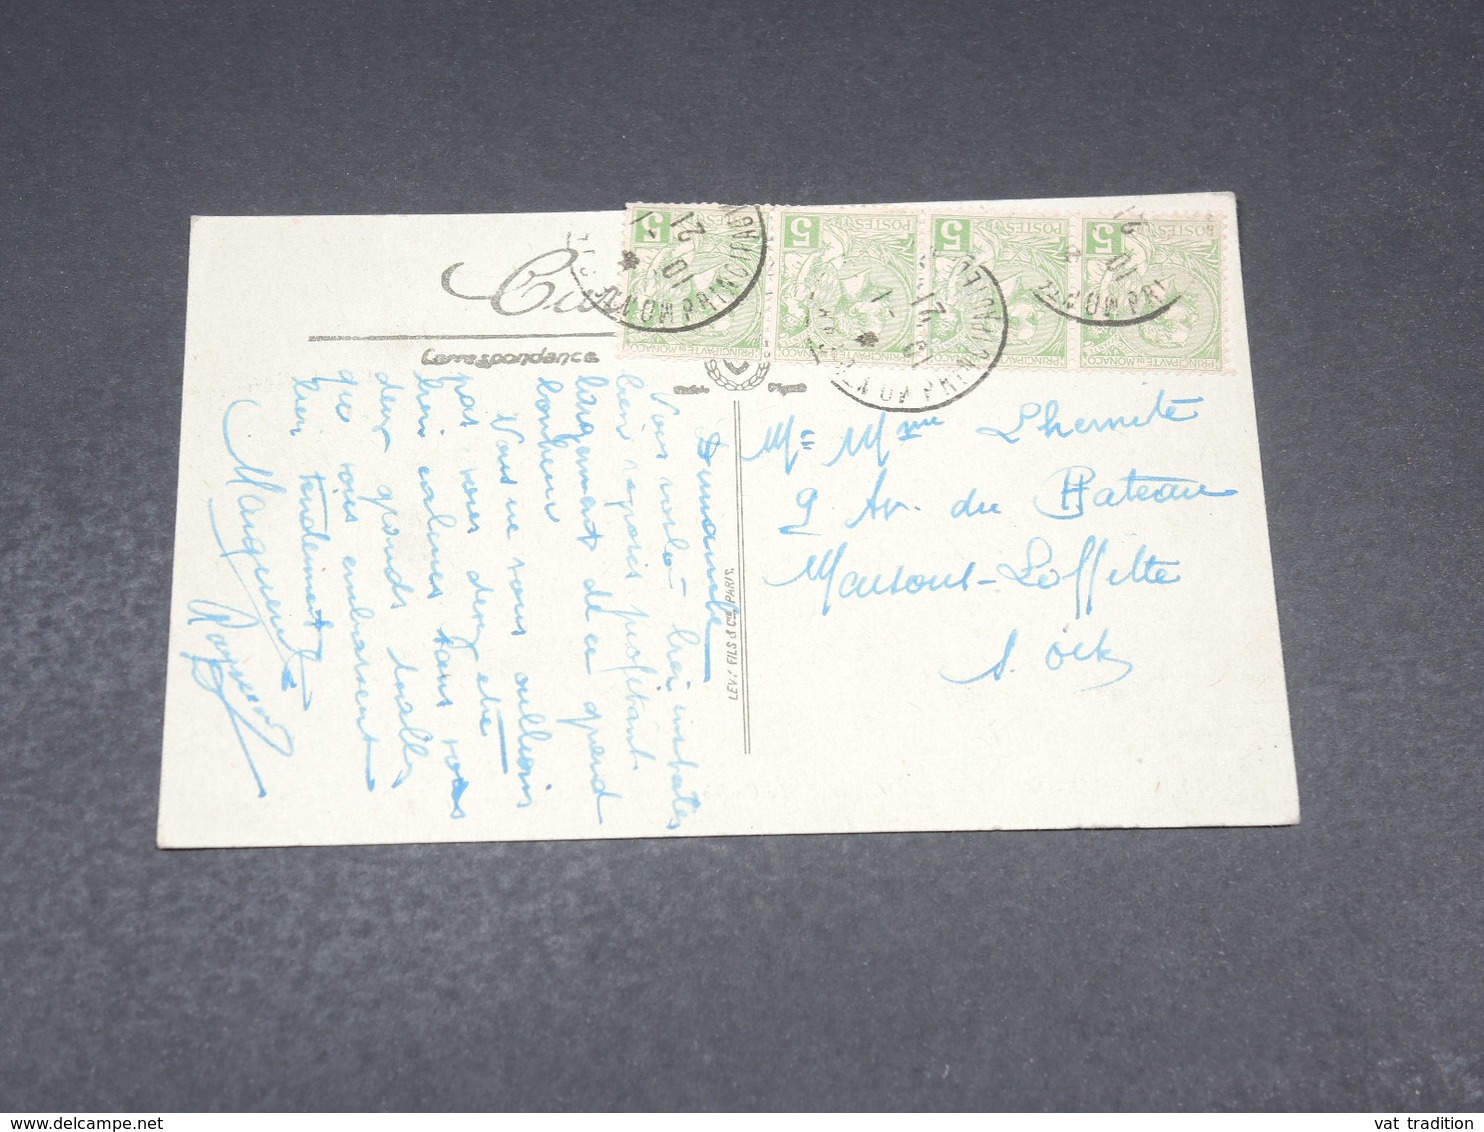 MONACO - Affranchissement Sur Carte Postale En 1921 Pour Maisons Laffitte - L 19199 - Briefe U. Dokumente